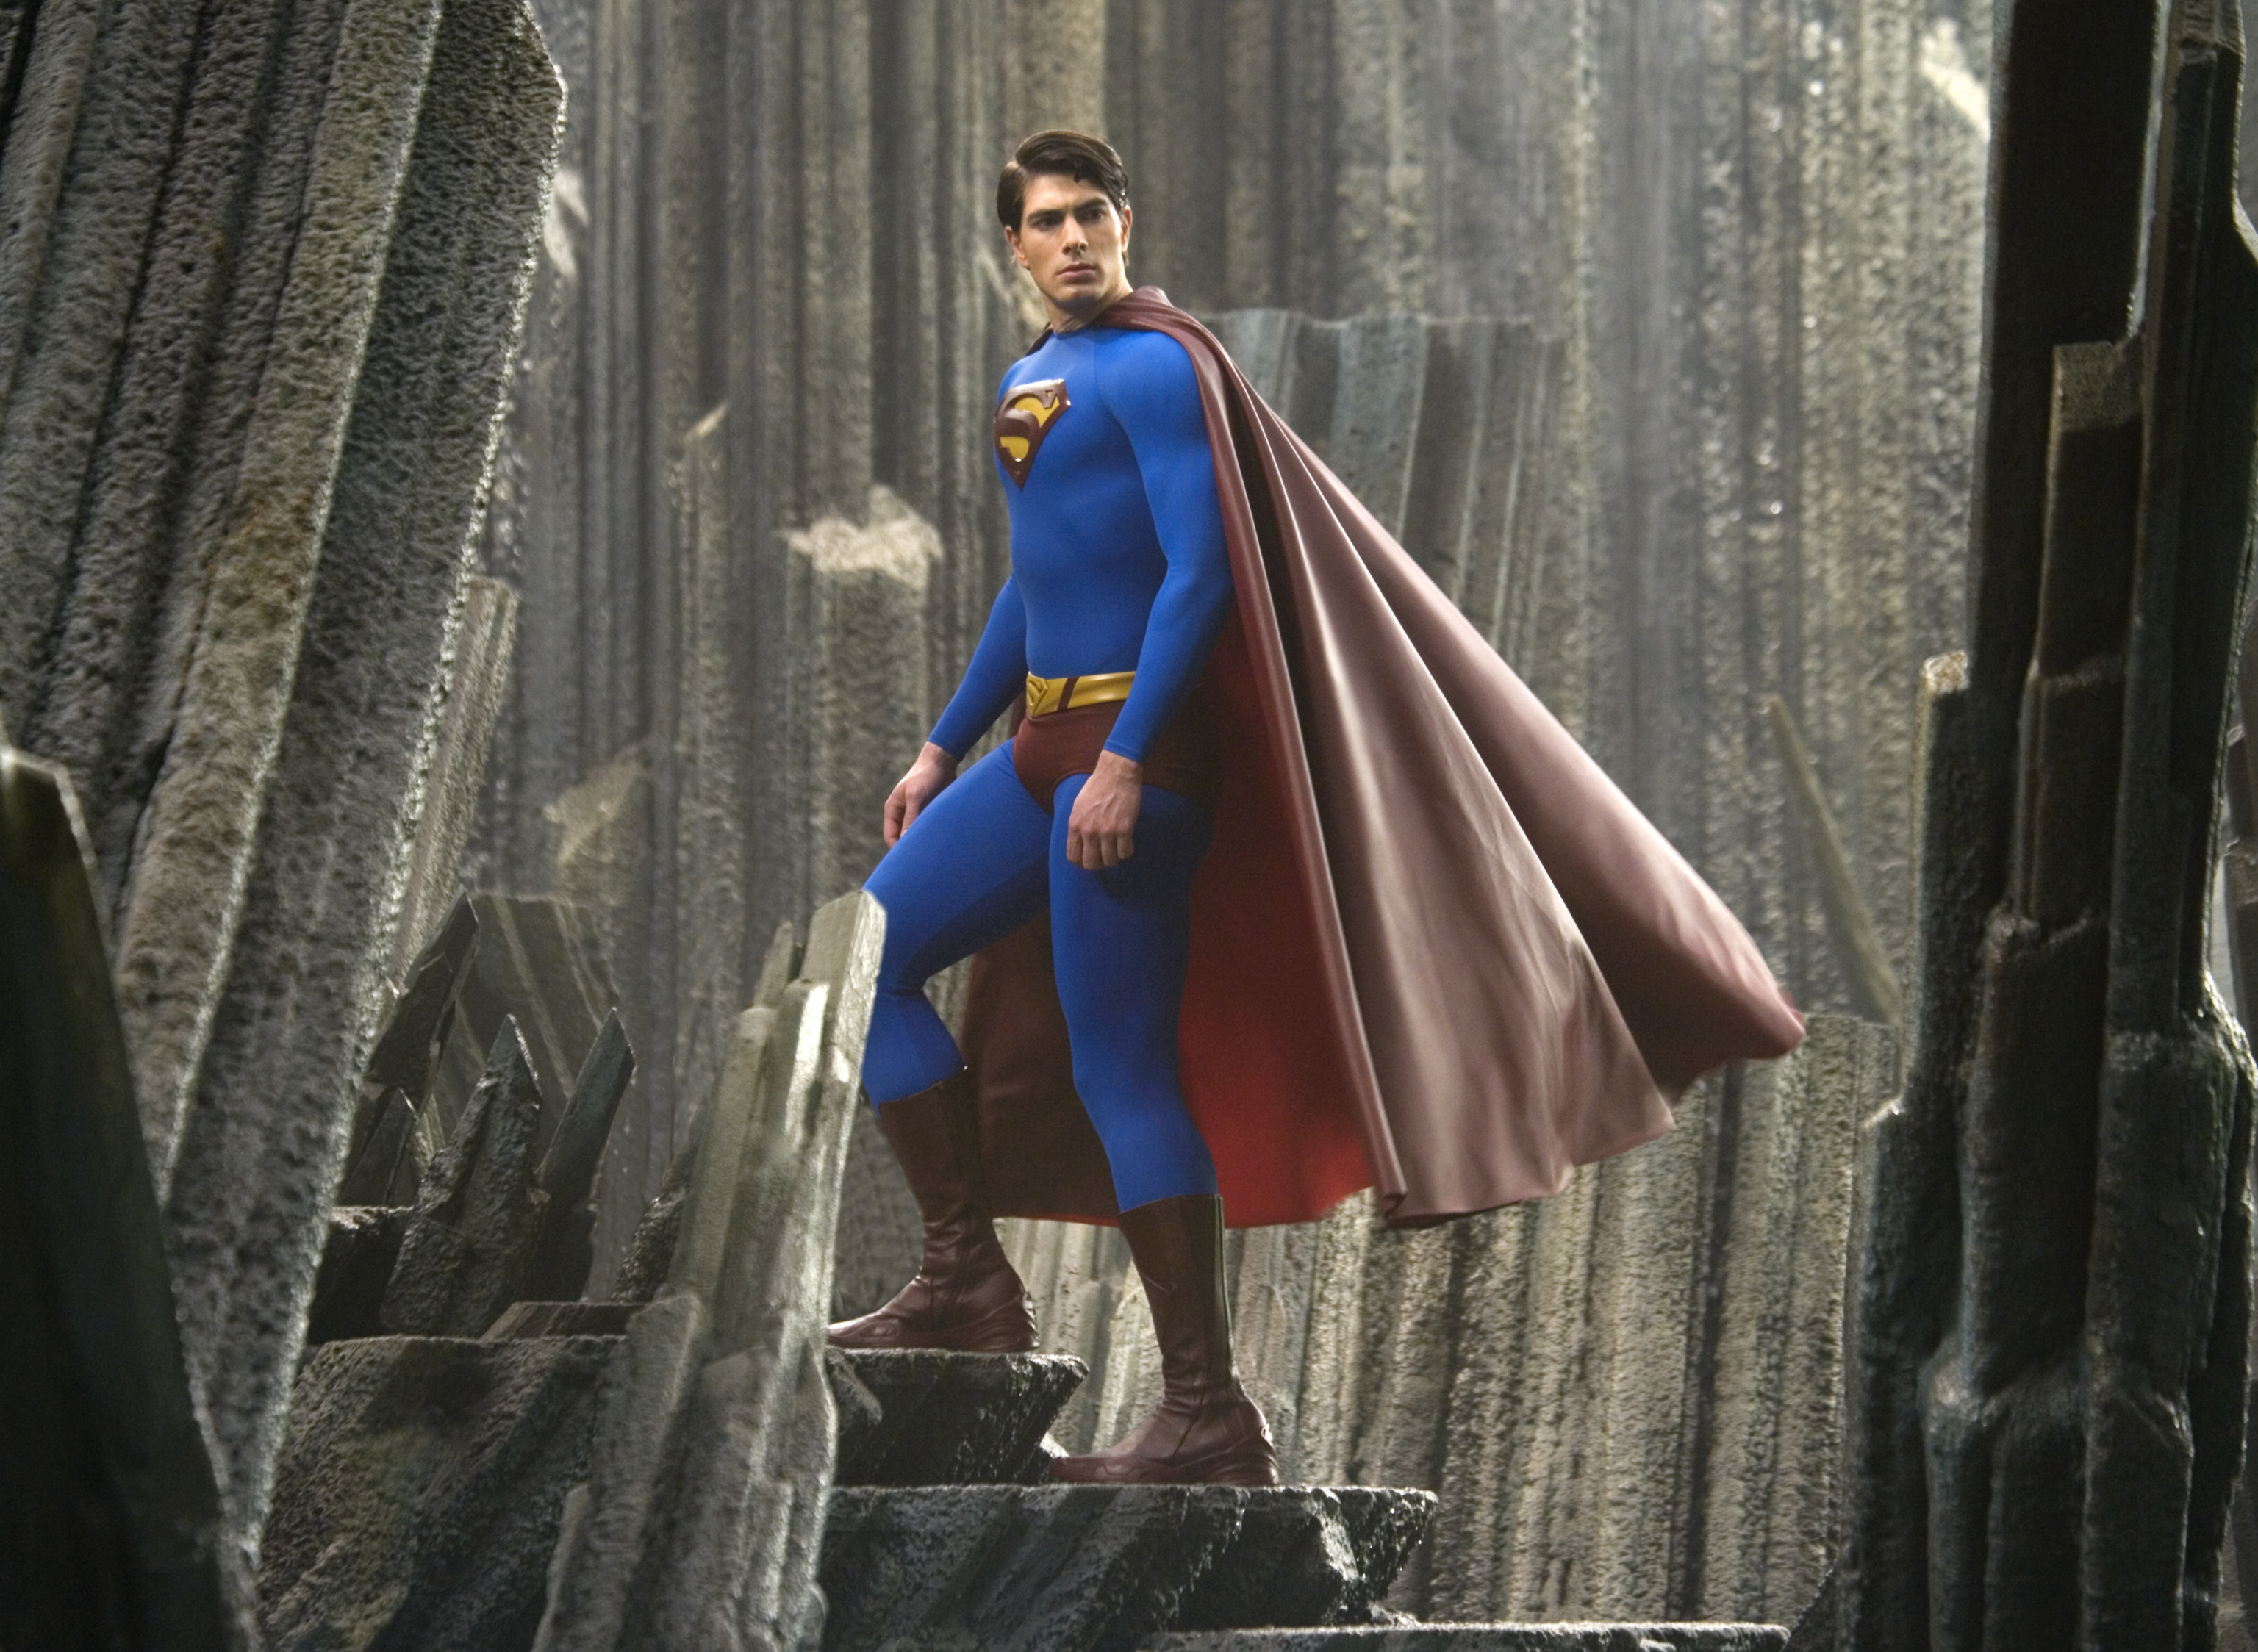 Siêu Nhân Trở Lại - Superman Returns